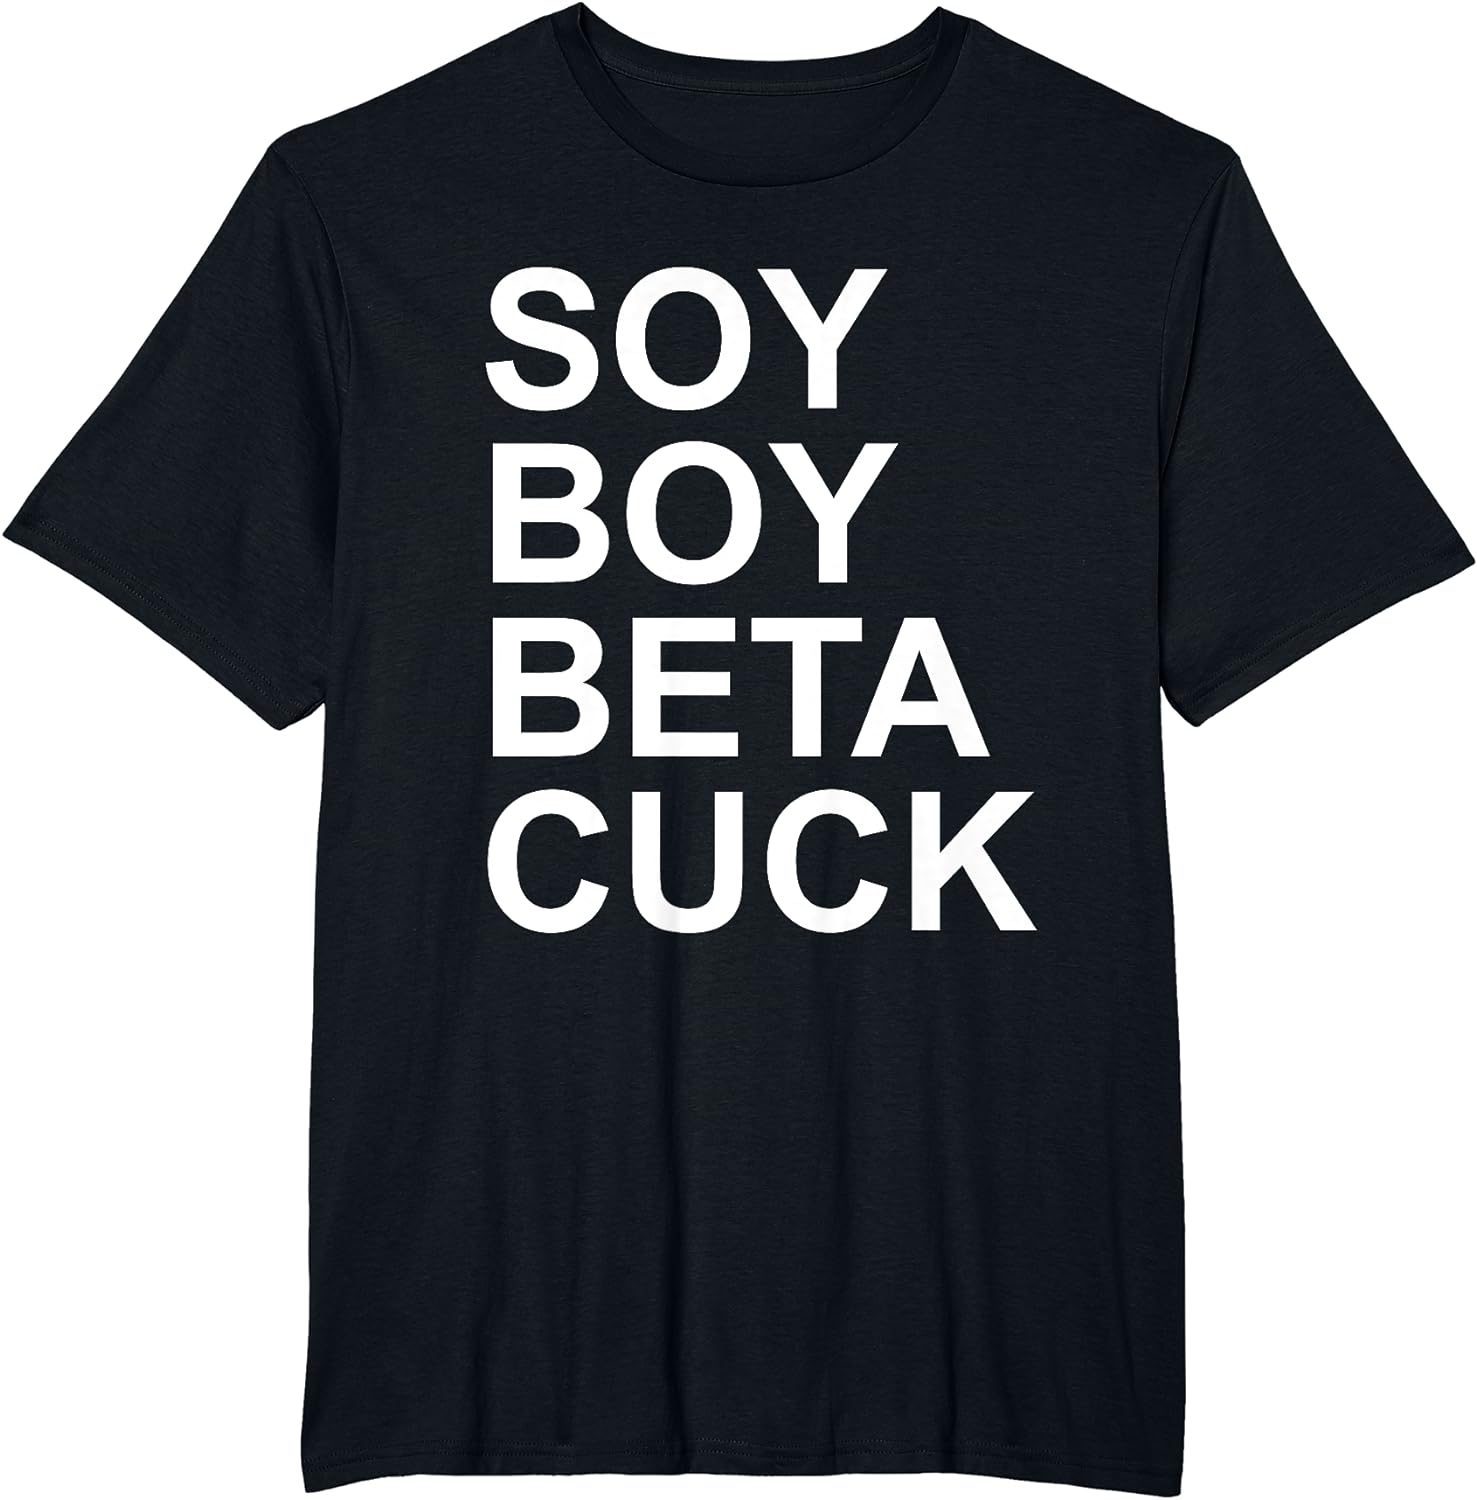 andres barragan add soy boy beta cuck photo